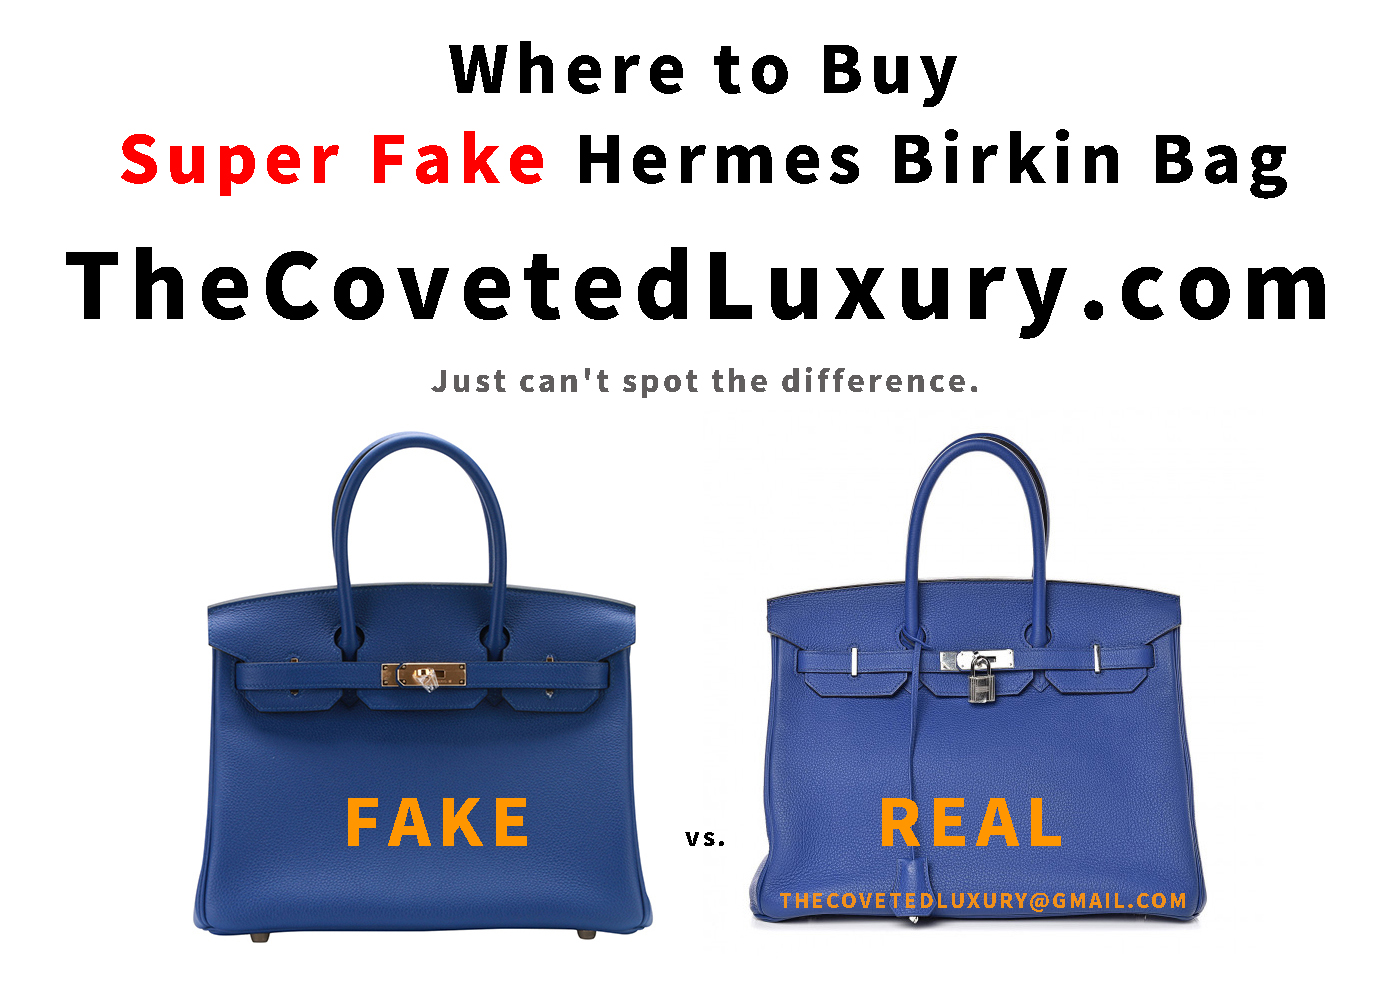 hermes birkin bag used for sale